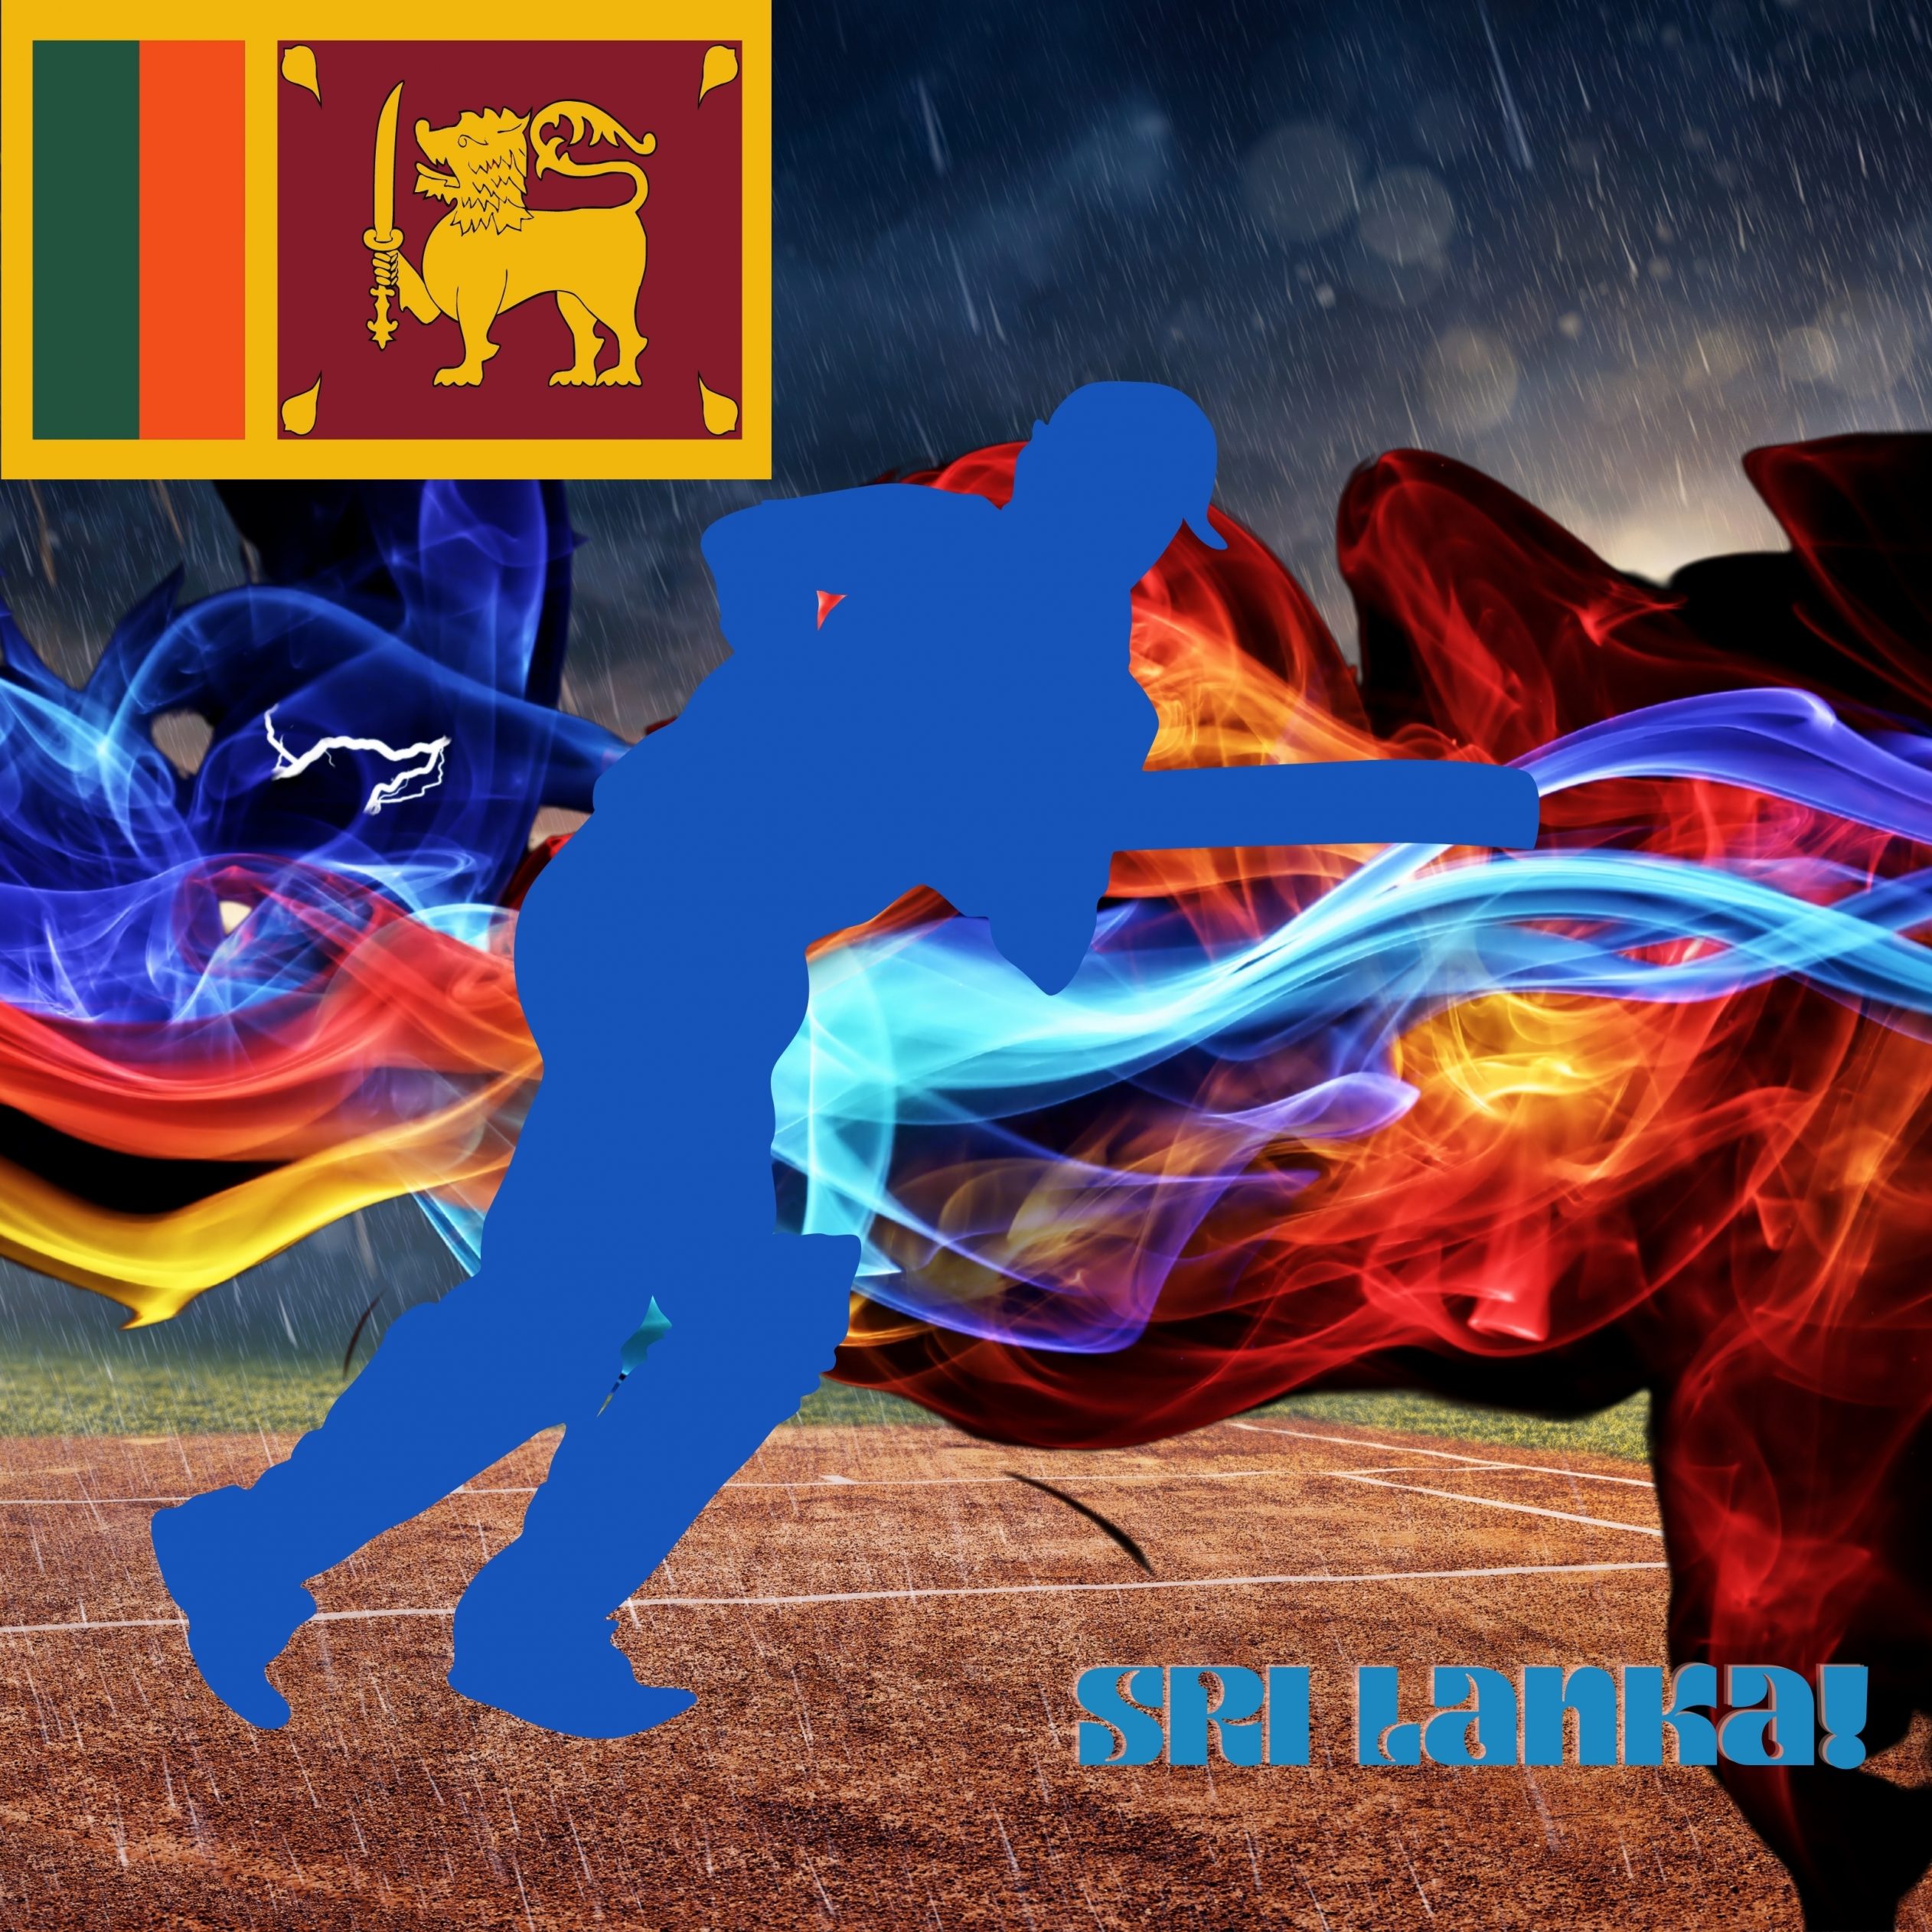 2524x2524 Parallax wallpaper 4k Sri Lanka Cricket Stadium iPad Wallpaper 2524x2524 pixels resolution